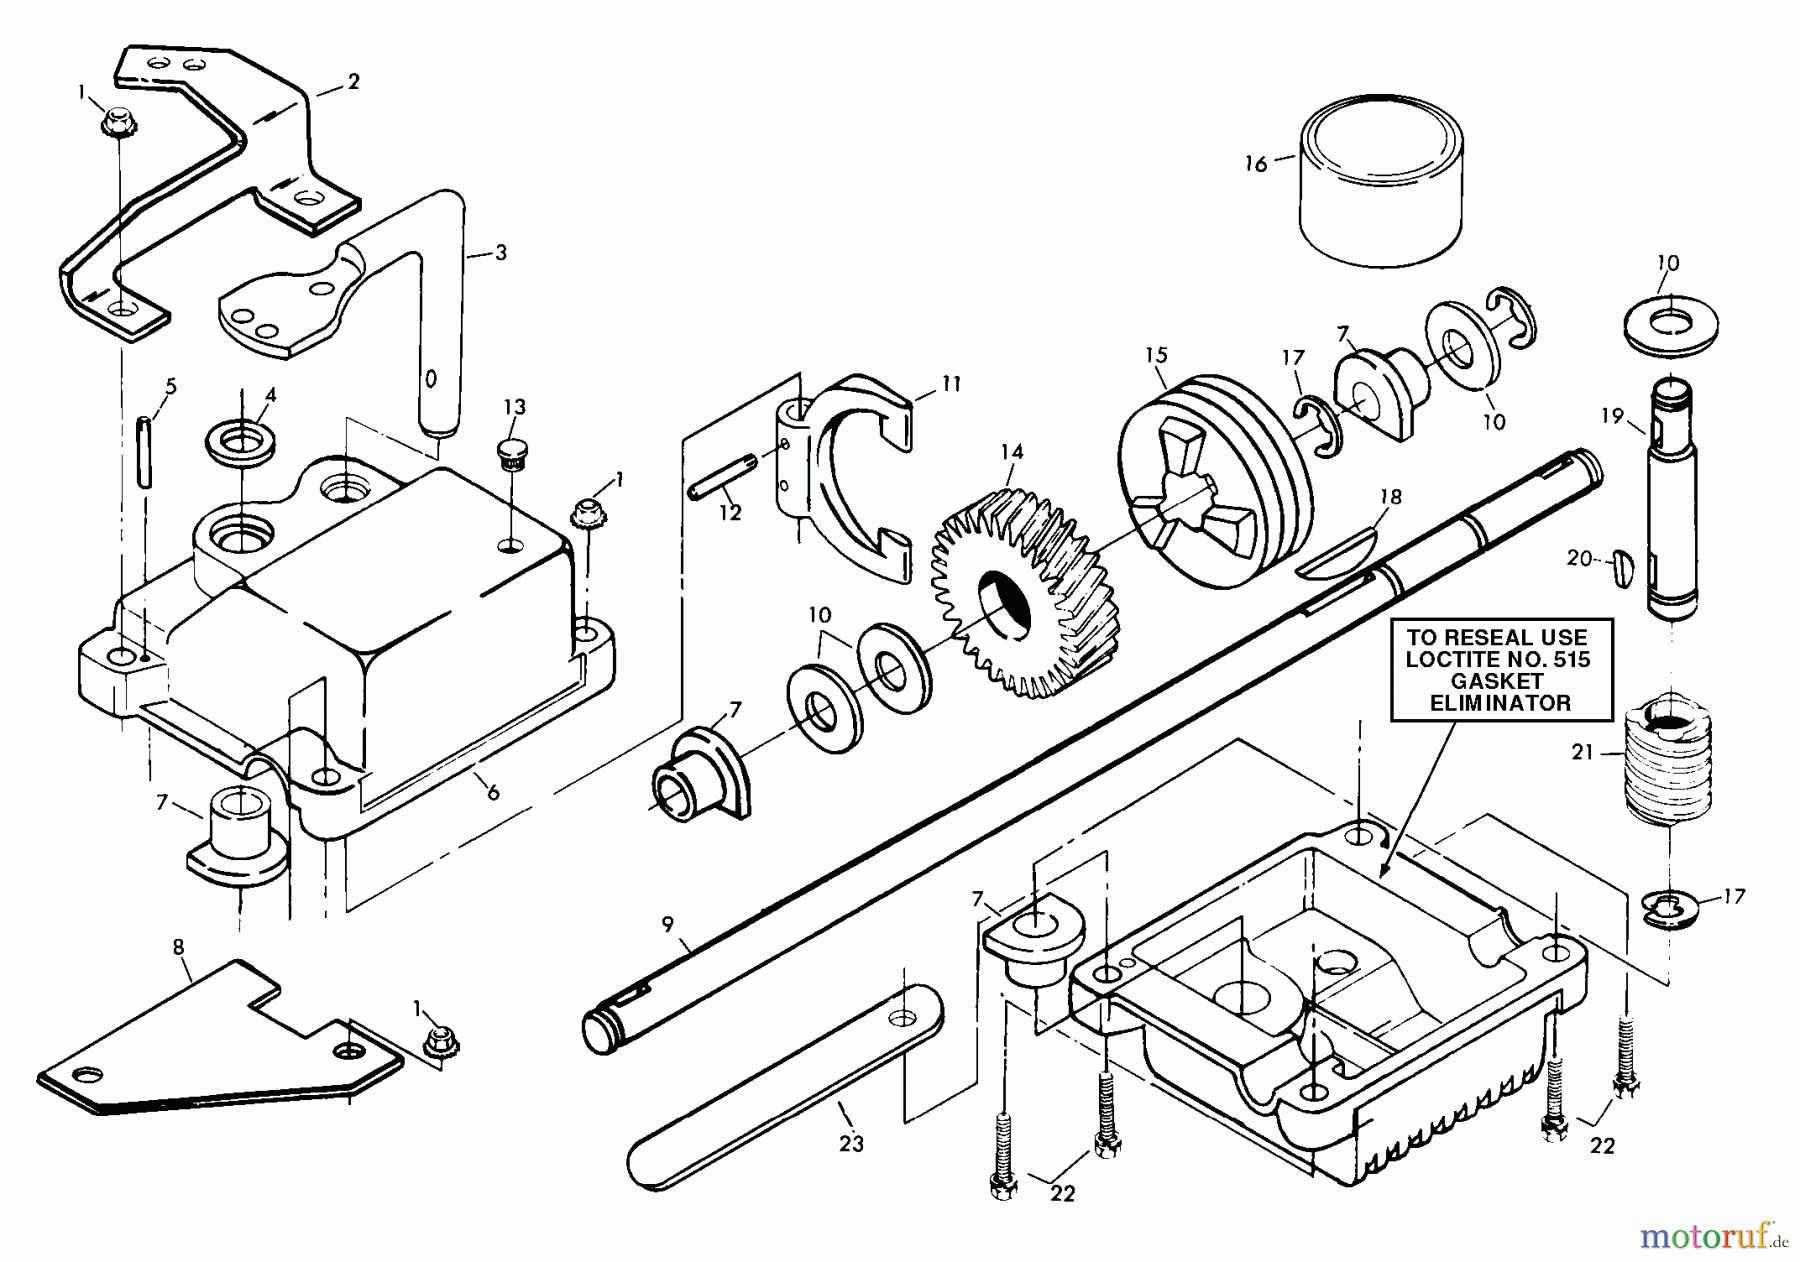  Husqvarna Rasenmäher 56 SFEB (954050901) - Husqvarna Walk-Behind Mower (1999-12 & After) Gear Case Assembly (Part 1)